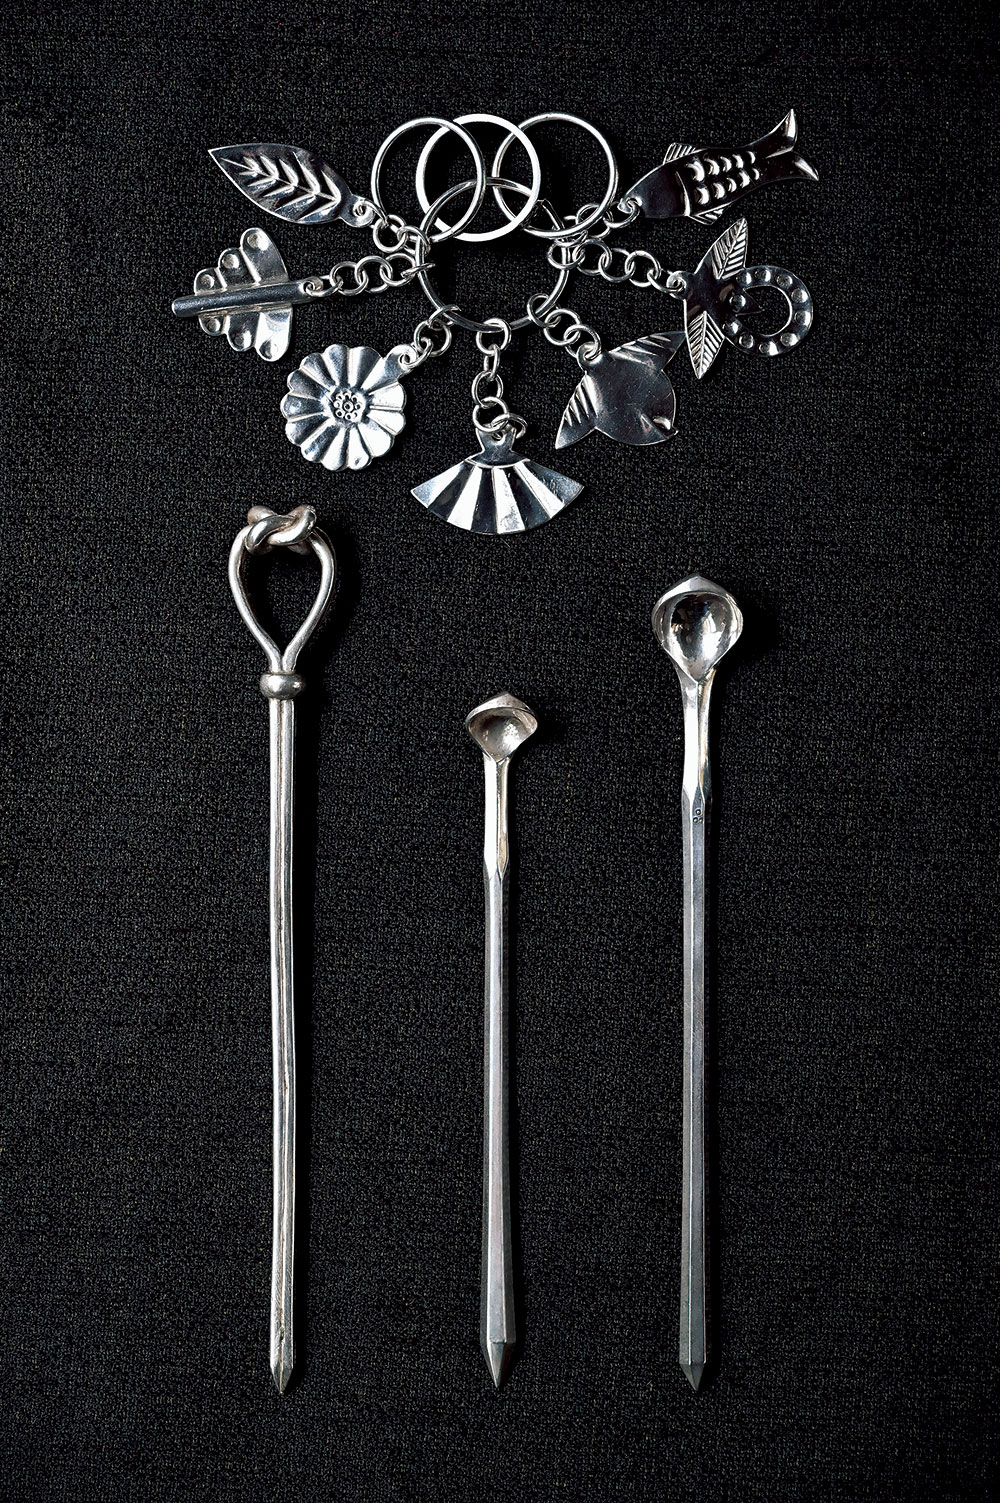 琉球伝統の婚礼宝飾品“房指輪” 45,000円。髪を結う“ジーファー(銀簪)”〈参考作品〉の匙のような形は、女性の姿を表している。